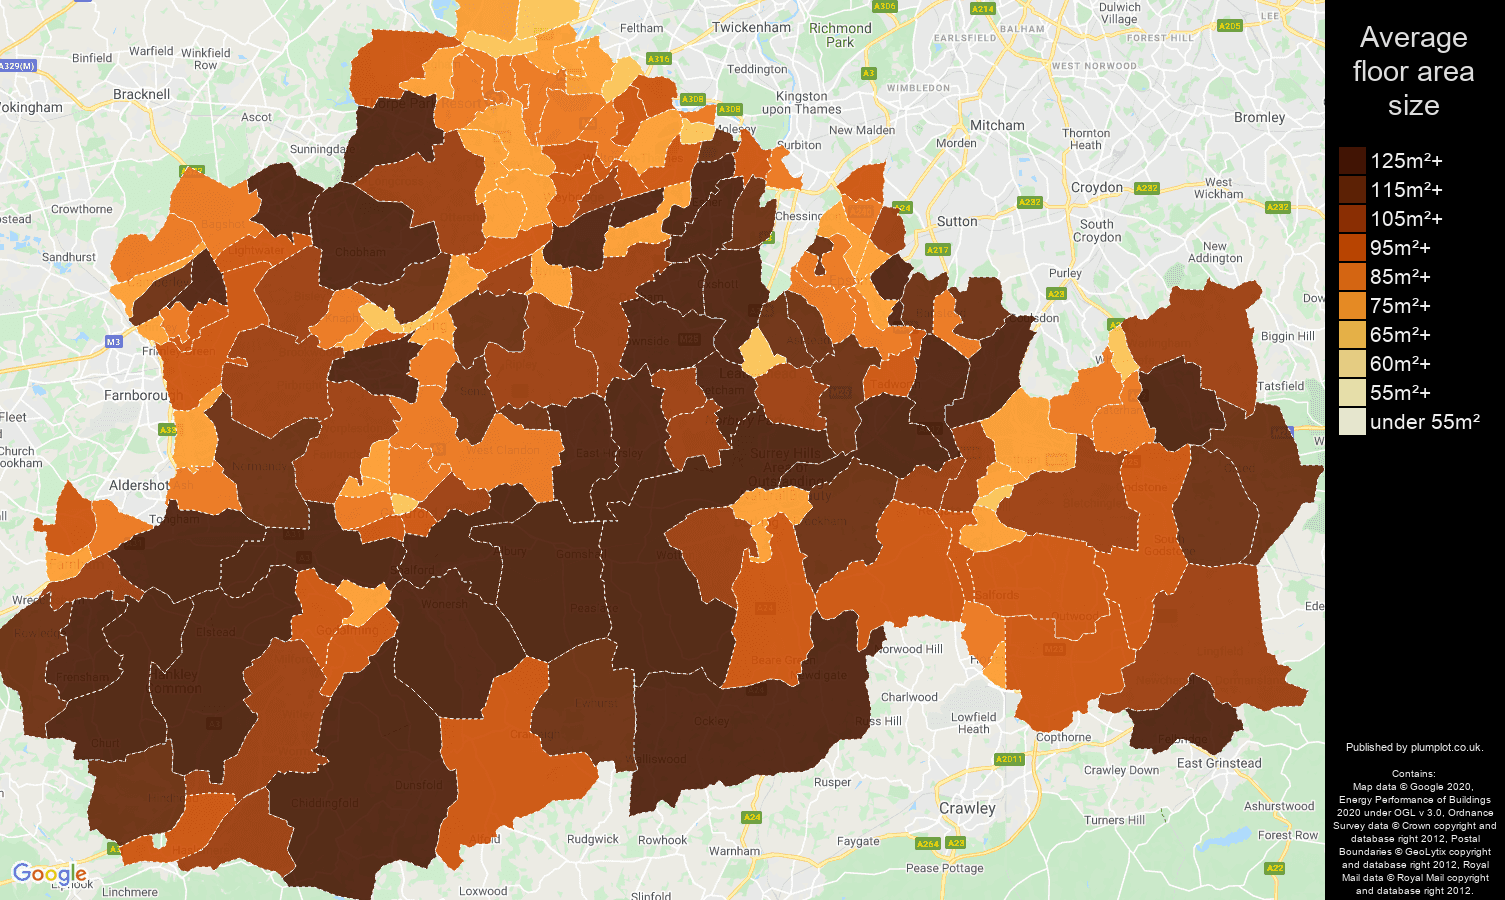 Surrey map of average floor area size of properties